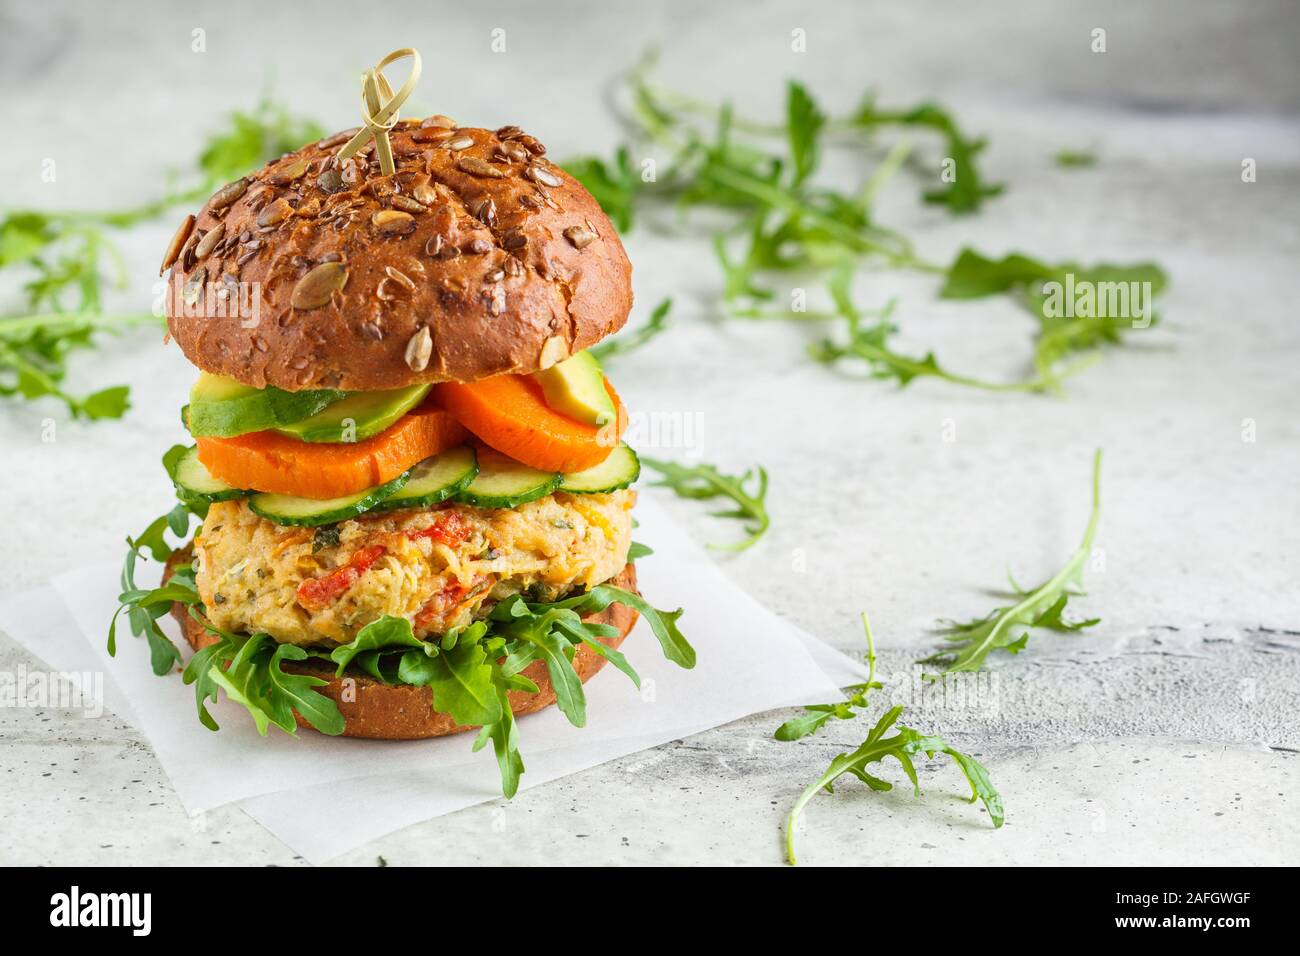 Vegane Burger mit pflanzlichen Schnitzel, Süßkartoffel, Avocado, Gurke und Rucola. Gesunde vegane Ernährung Konzept. Stockfoto